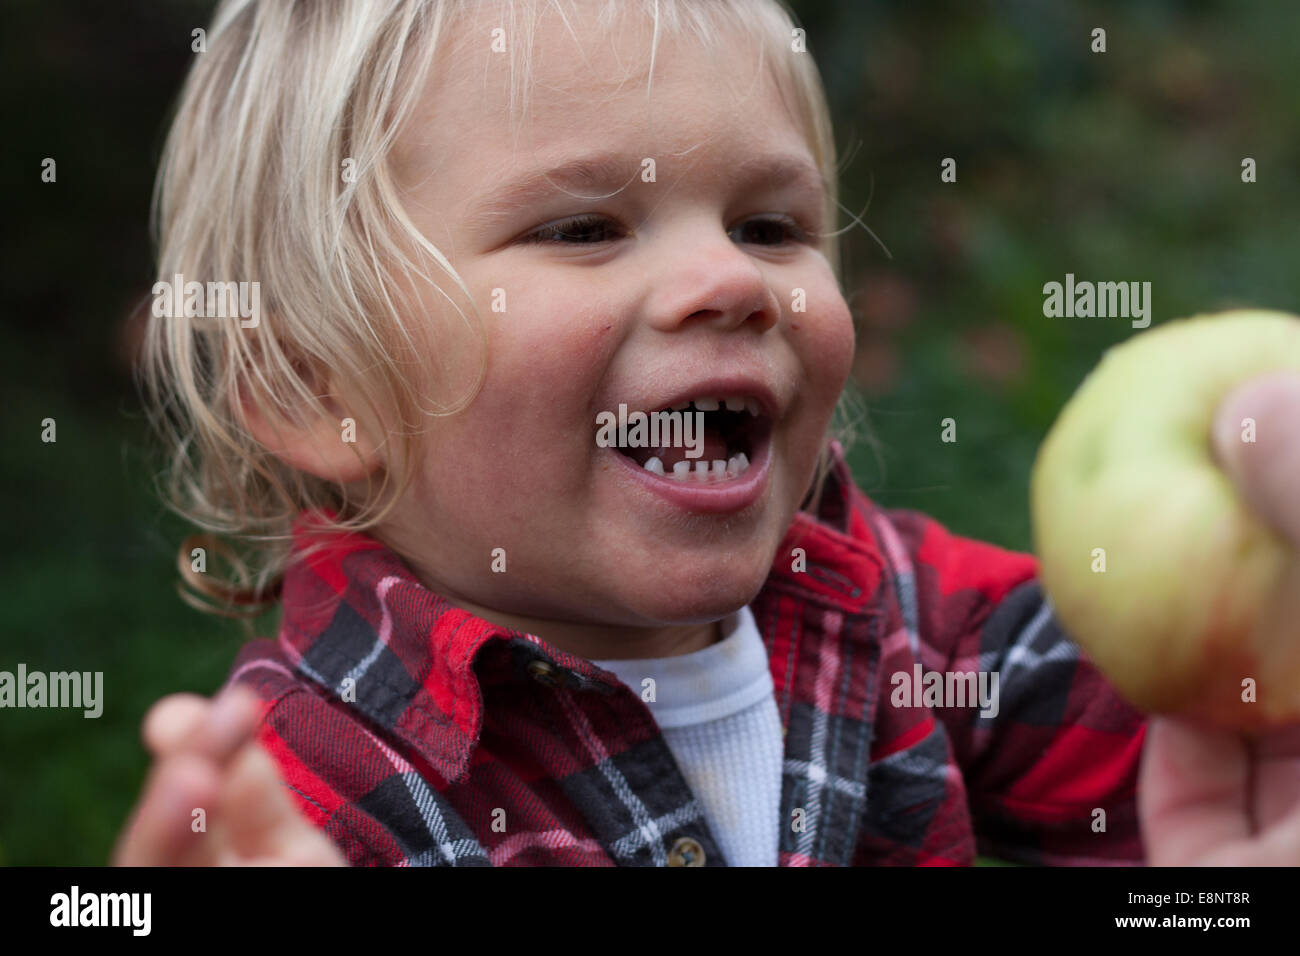 Toddler boy picking apples Stock Photo